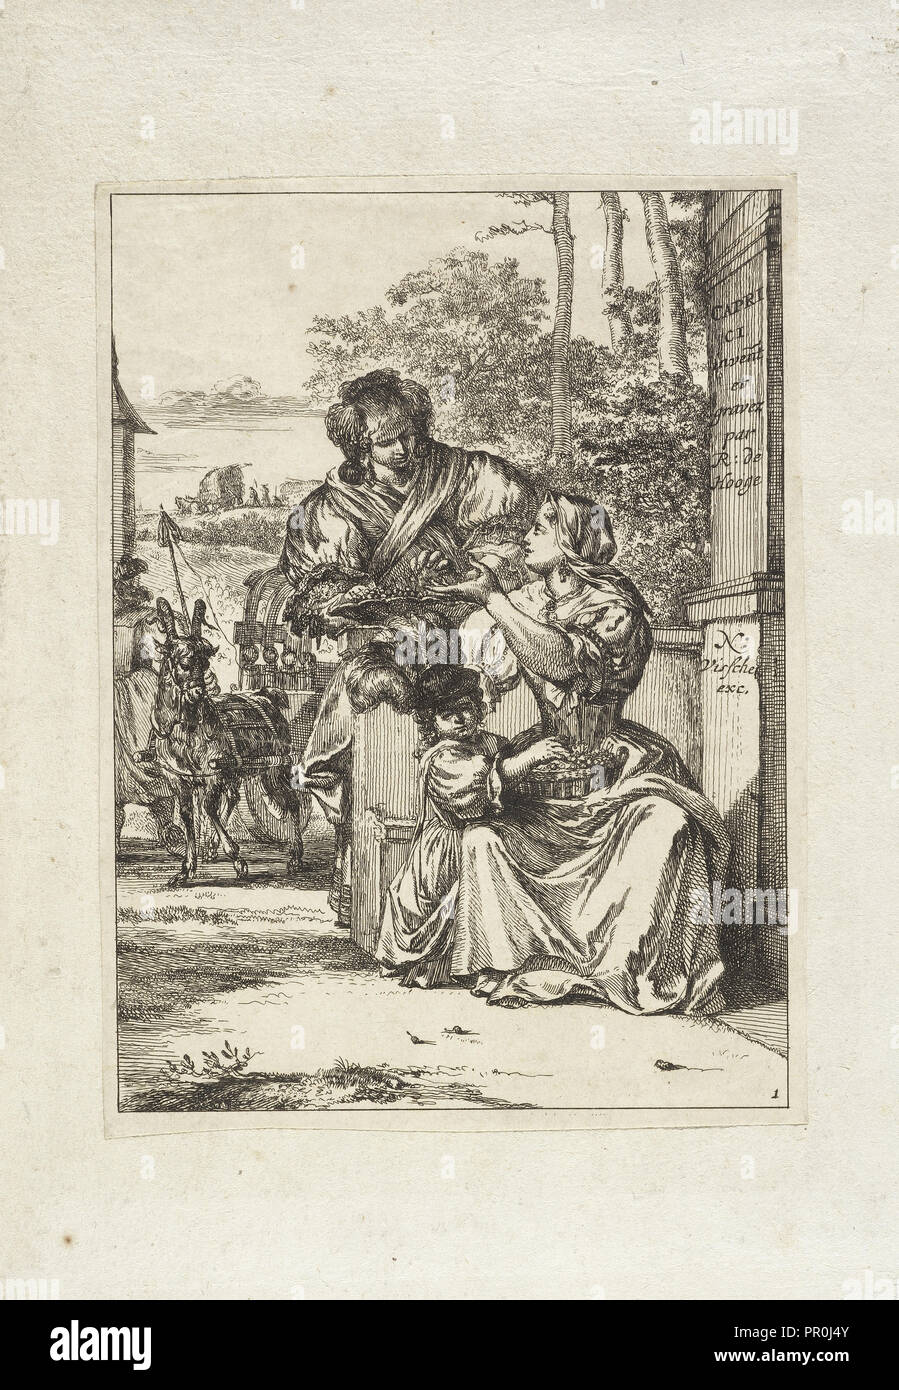 Deux femmes et une petite fille, Hooghe, Romeyn de, 1645-1708, Visscher, Nicolae, 1618-1679, gravure, gravée, 1674 Banque D'Images